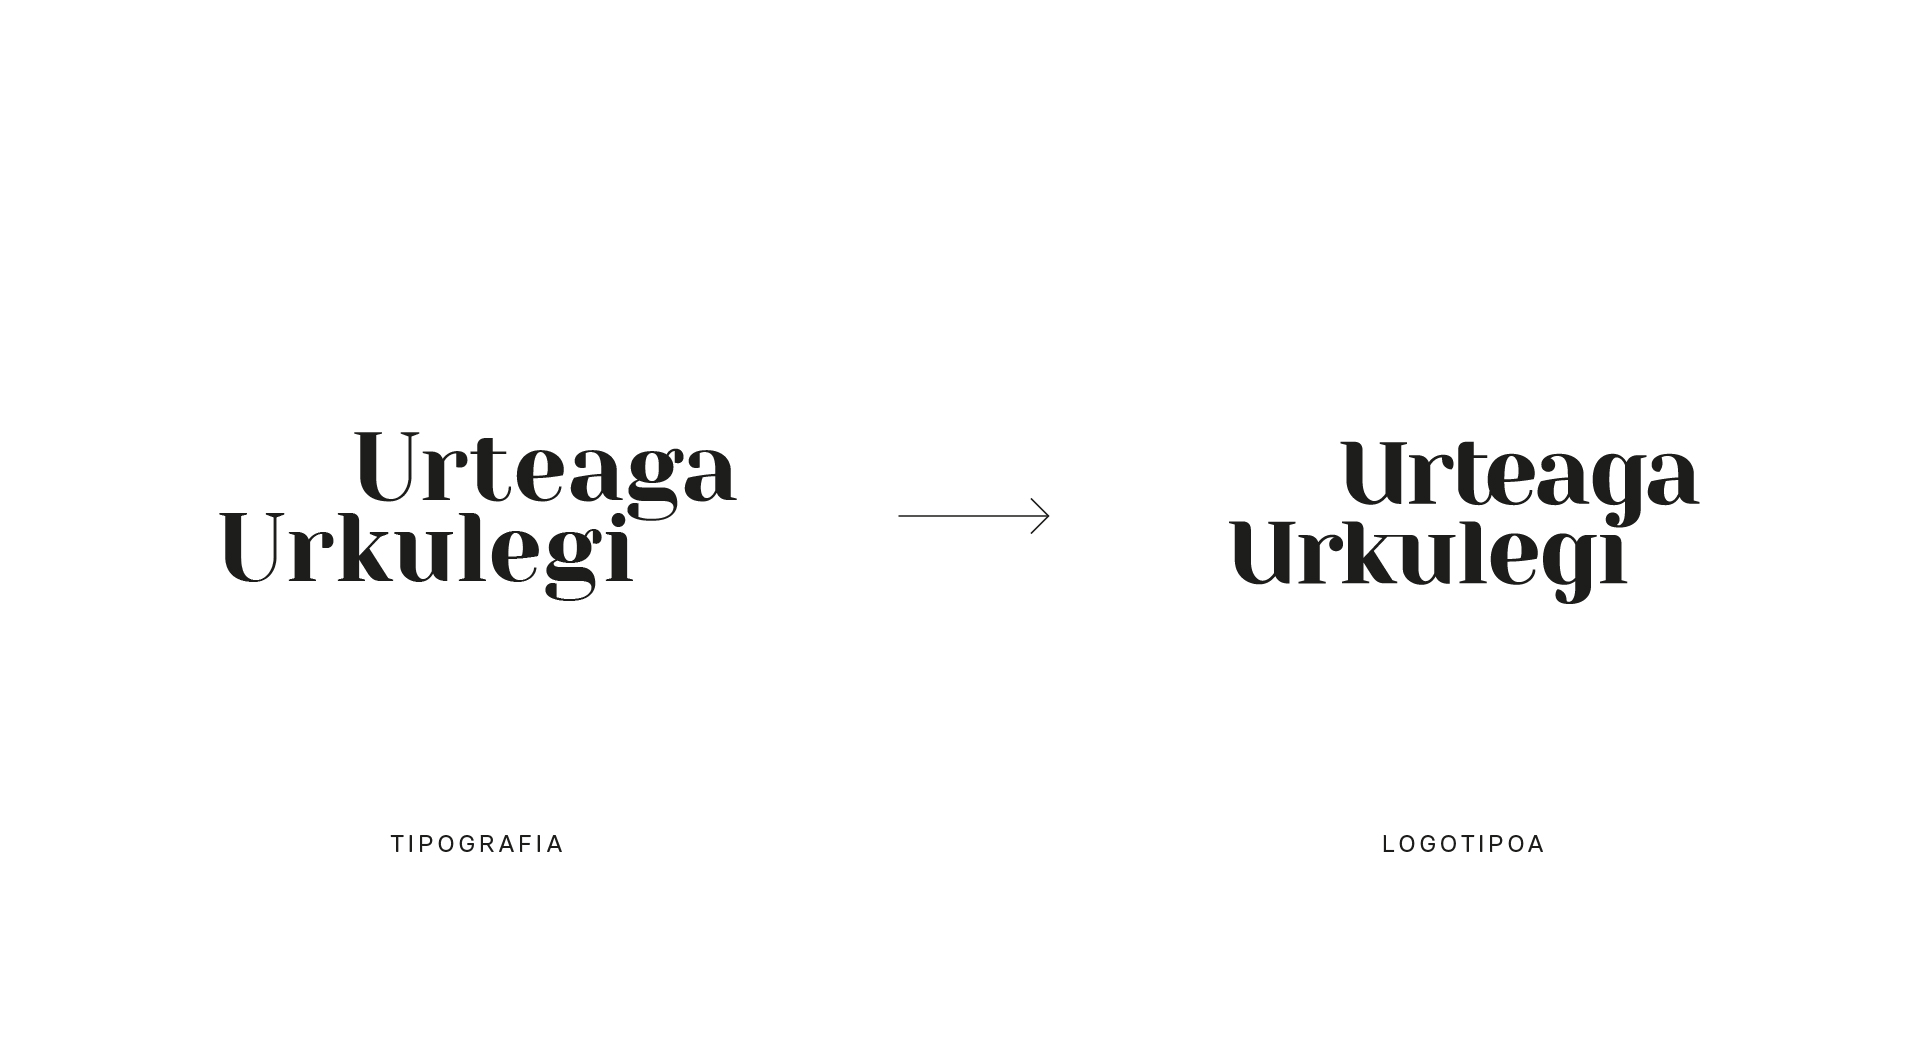 Urteaga-Urkulegi tipografia vs logotipoa